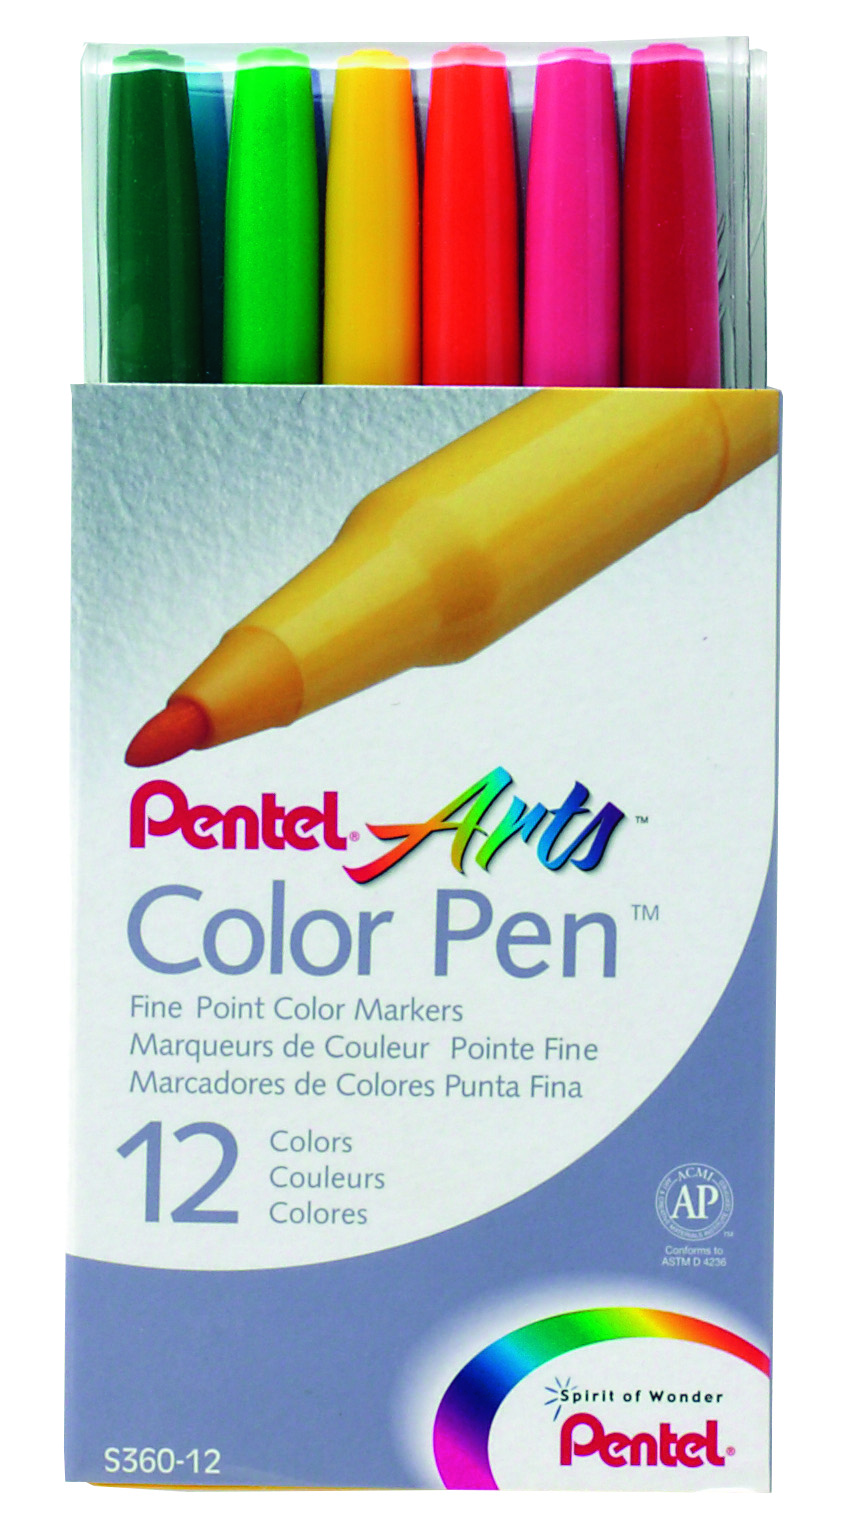 Faserschreiber Set Colour Pen